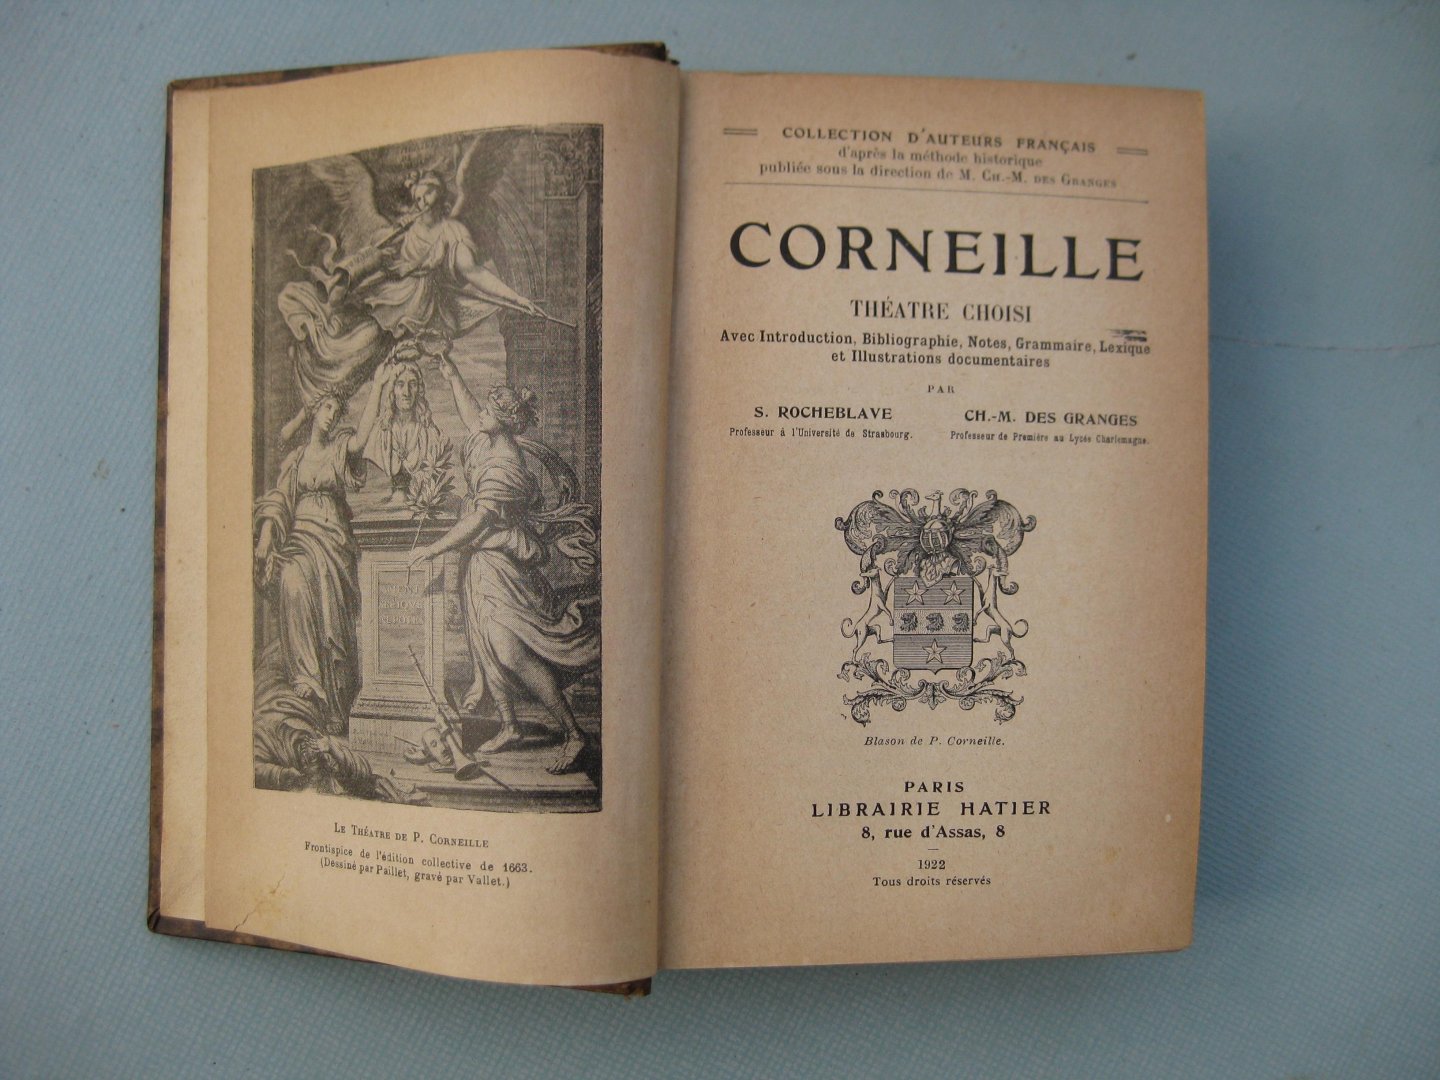 Corneille - Théatre choisi. Avec Introduction, Bibliographie, Notes, Grammaire, Lexique et Illustrations documentaires.